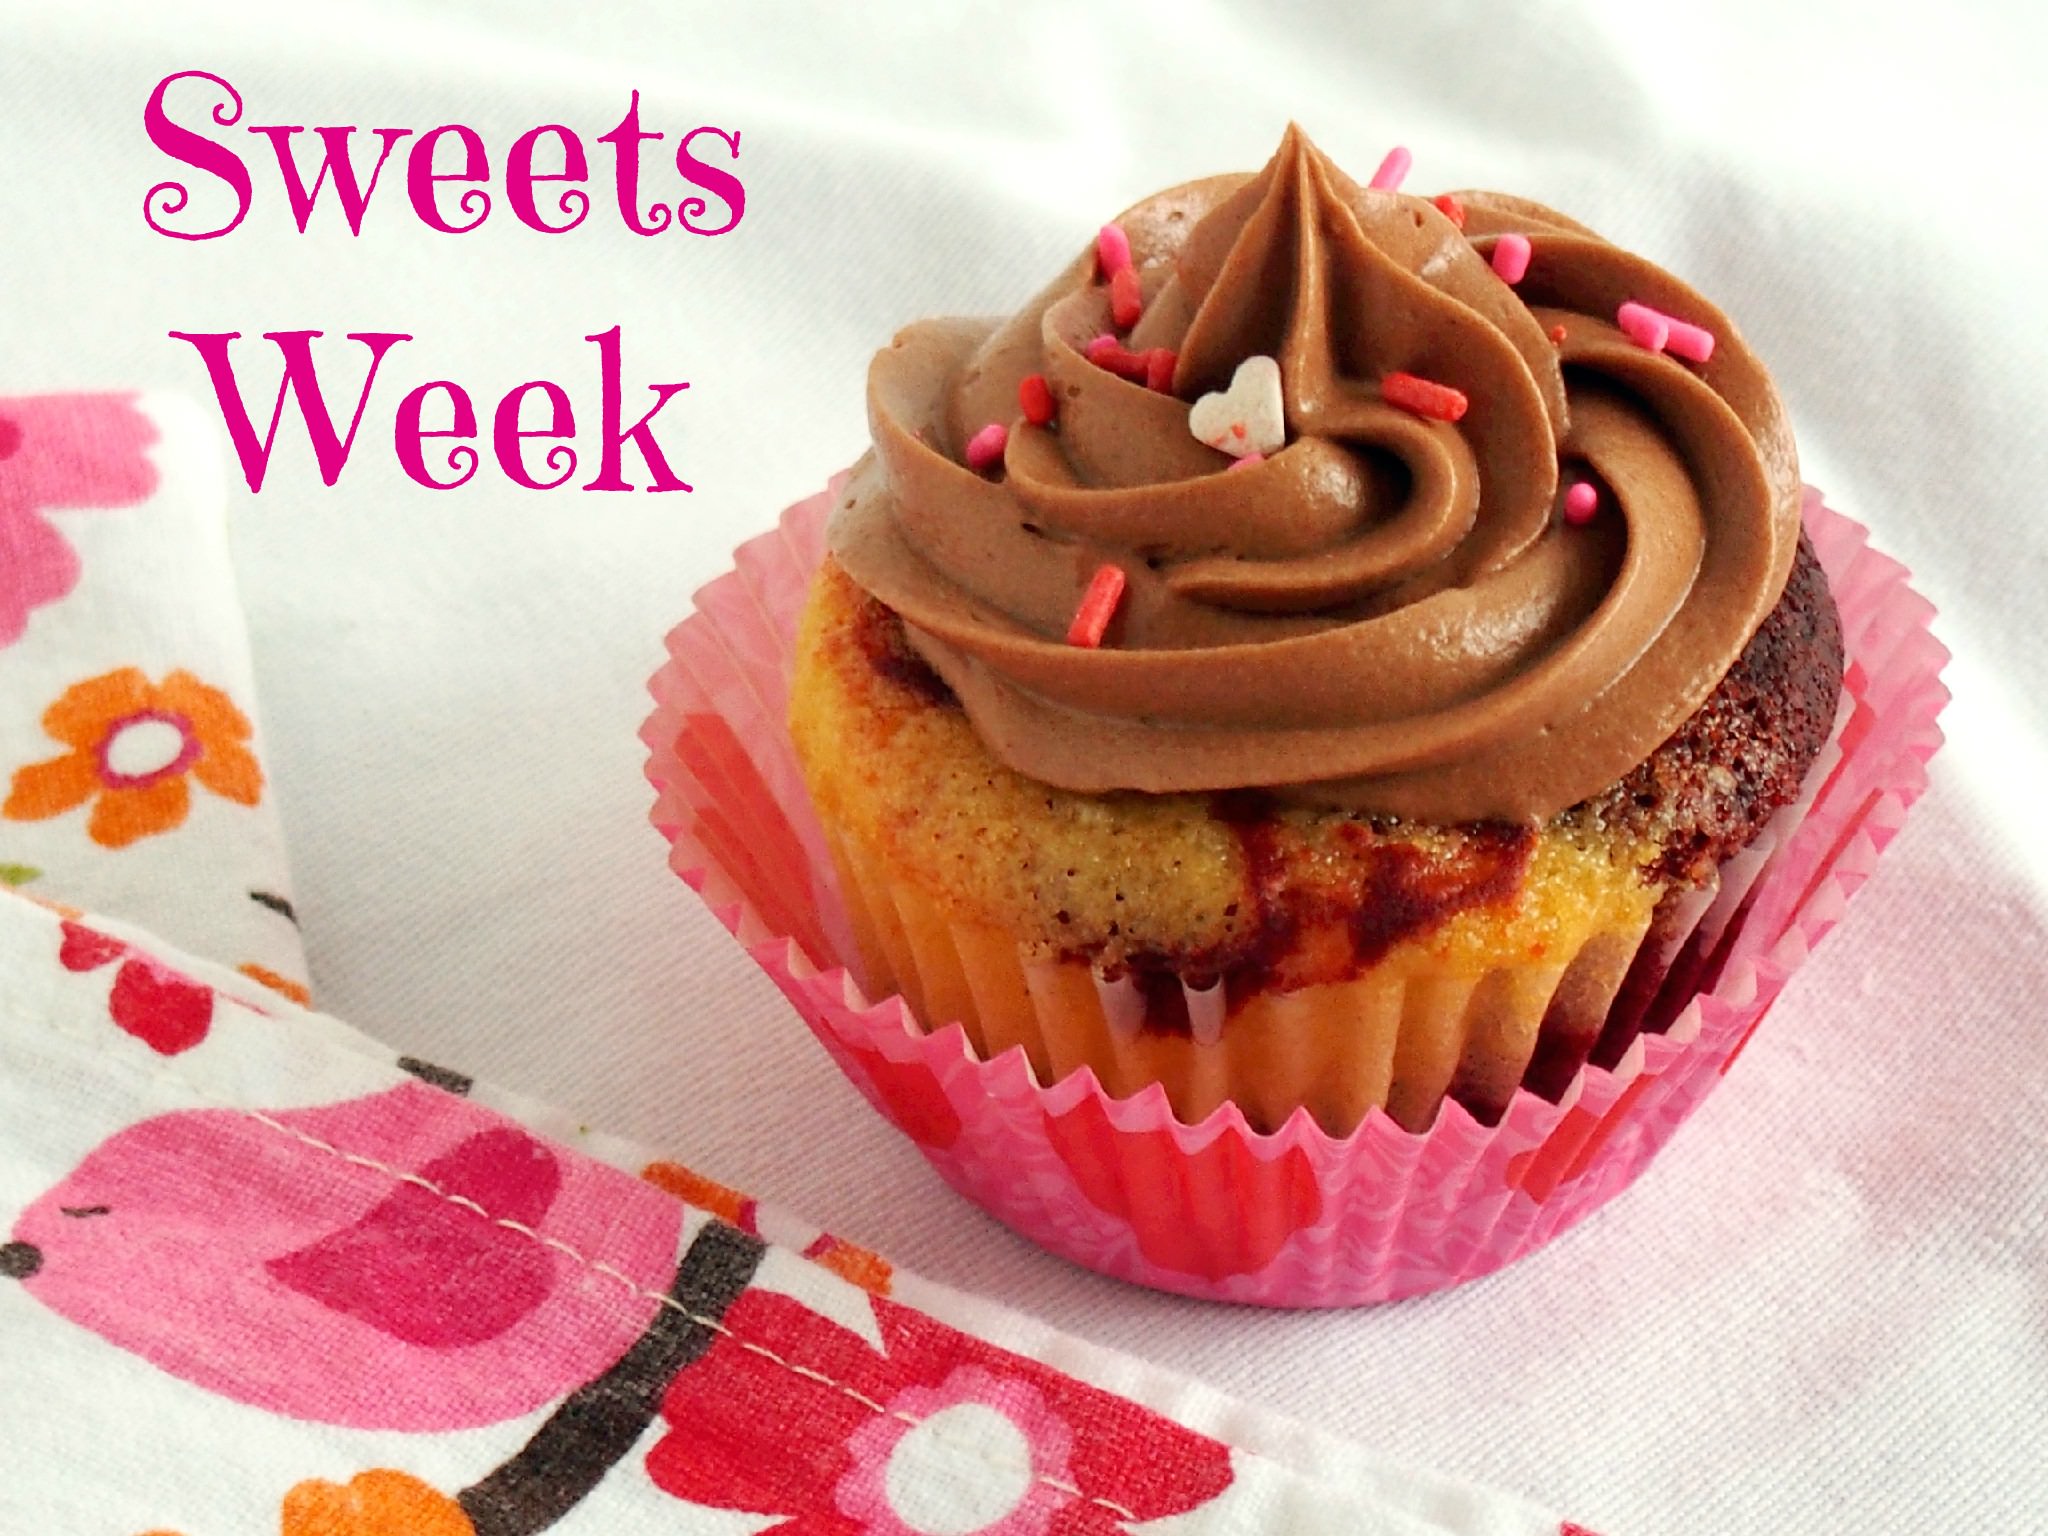 Sweets Week Image